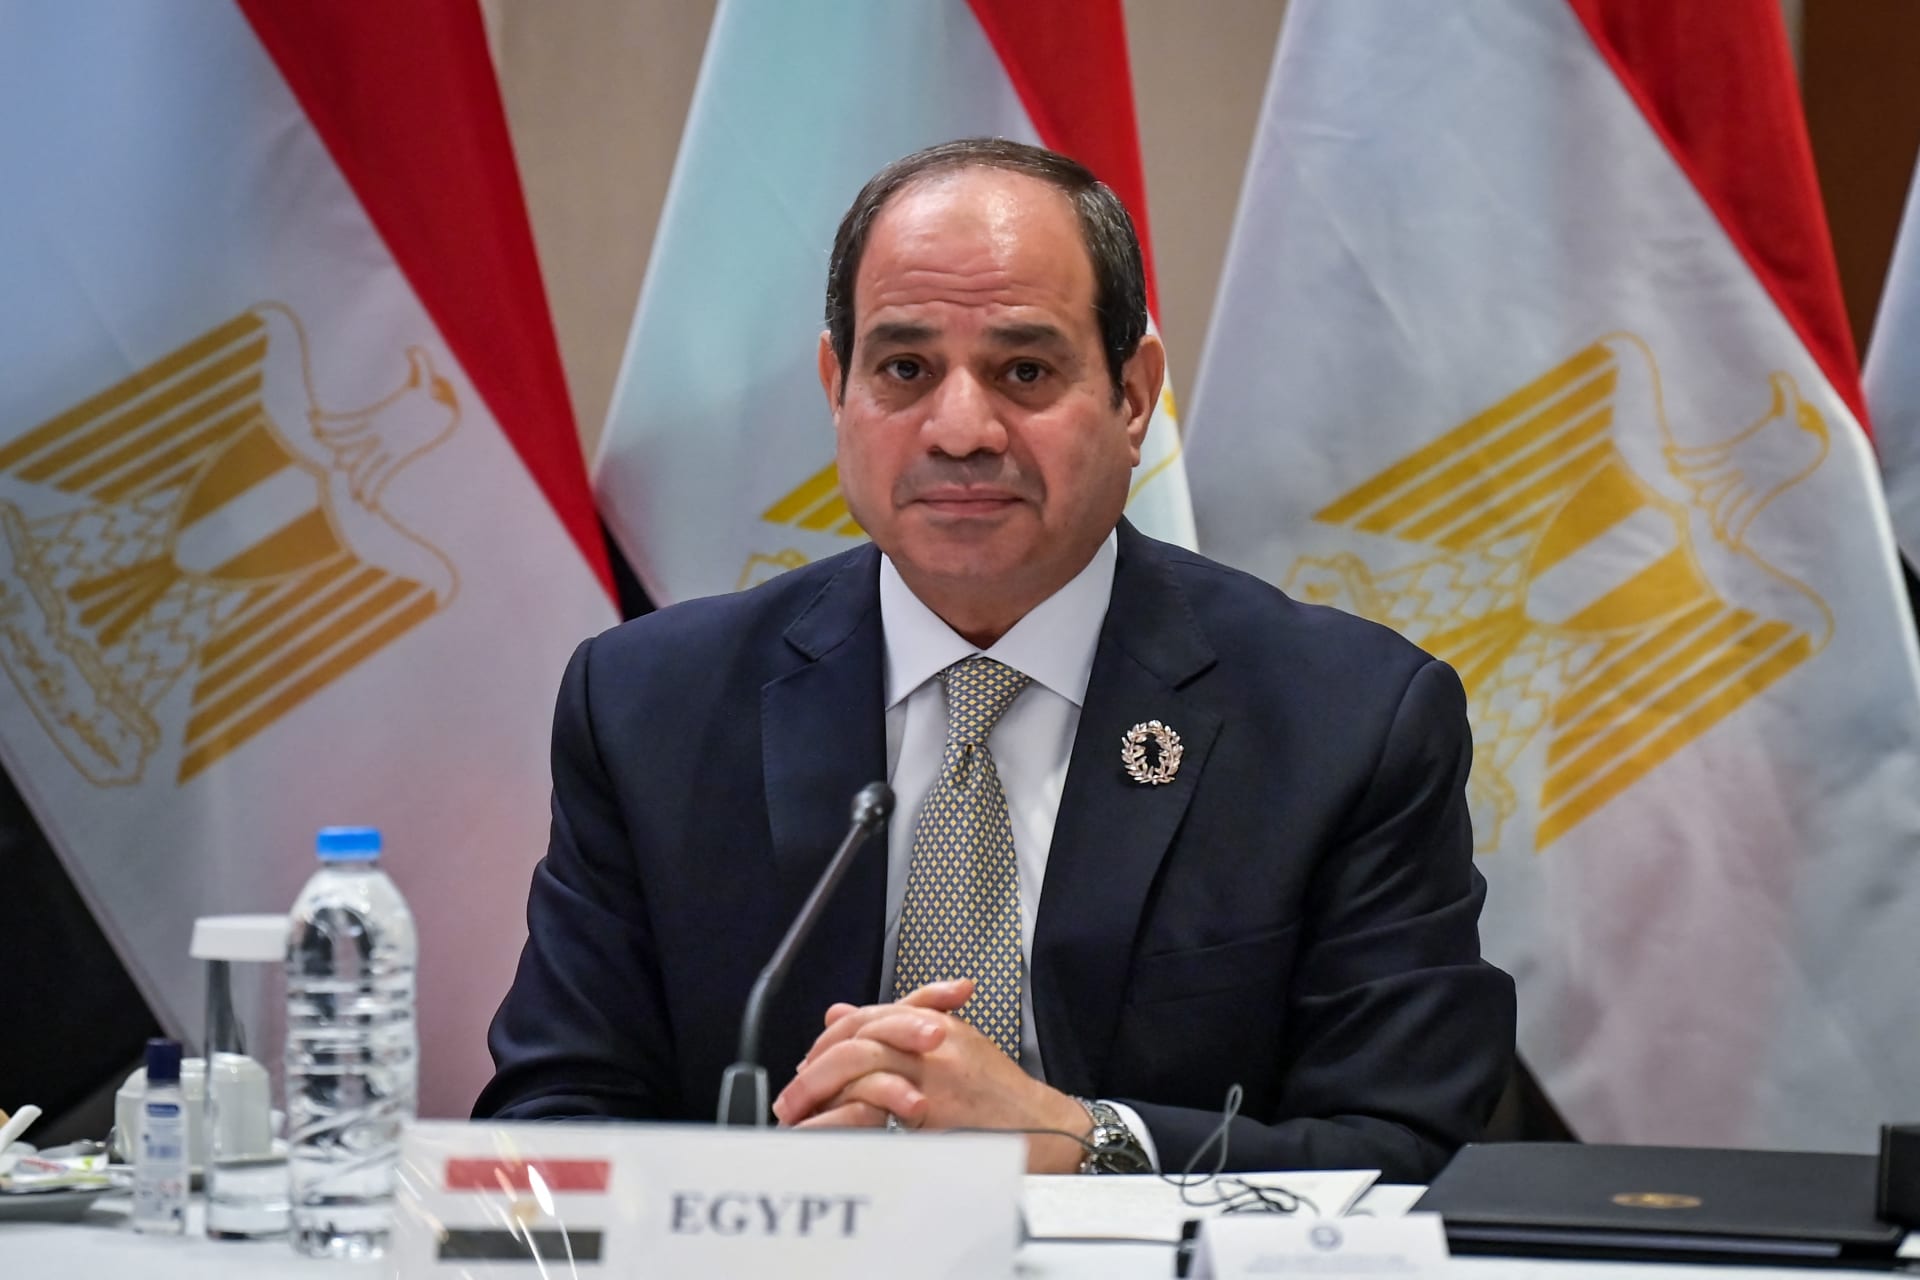 السيسي يعرب عن "خوفه" على مصر: أحداث 2011 و2013 تعرض أي دولة للانهيار